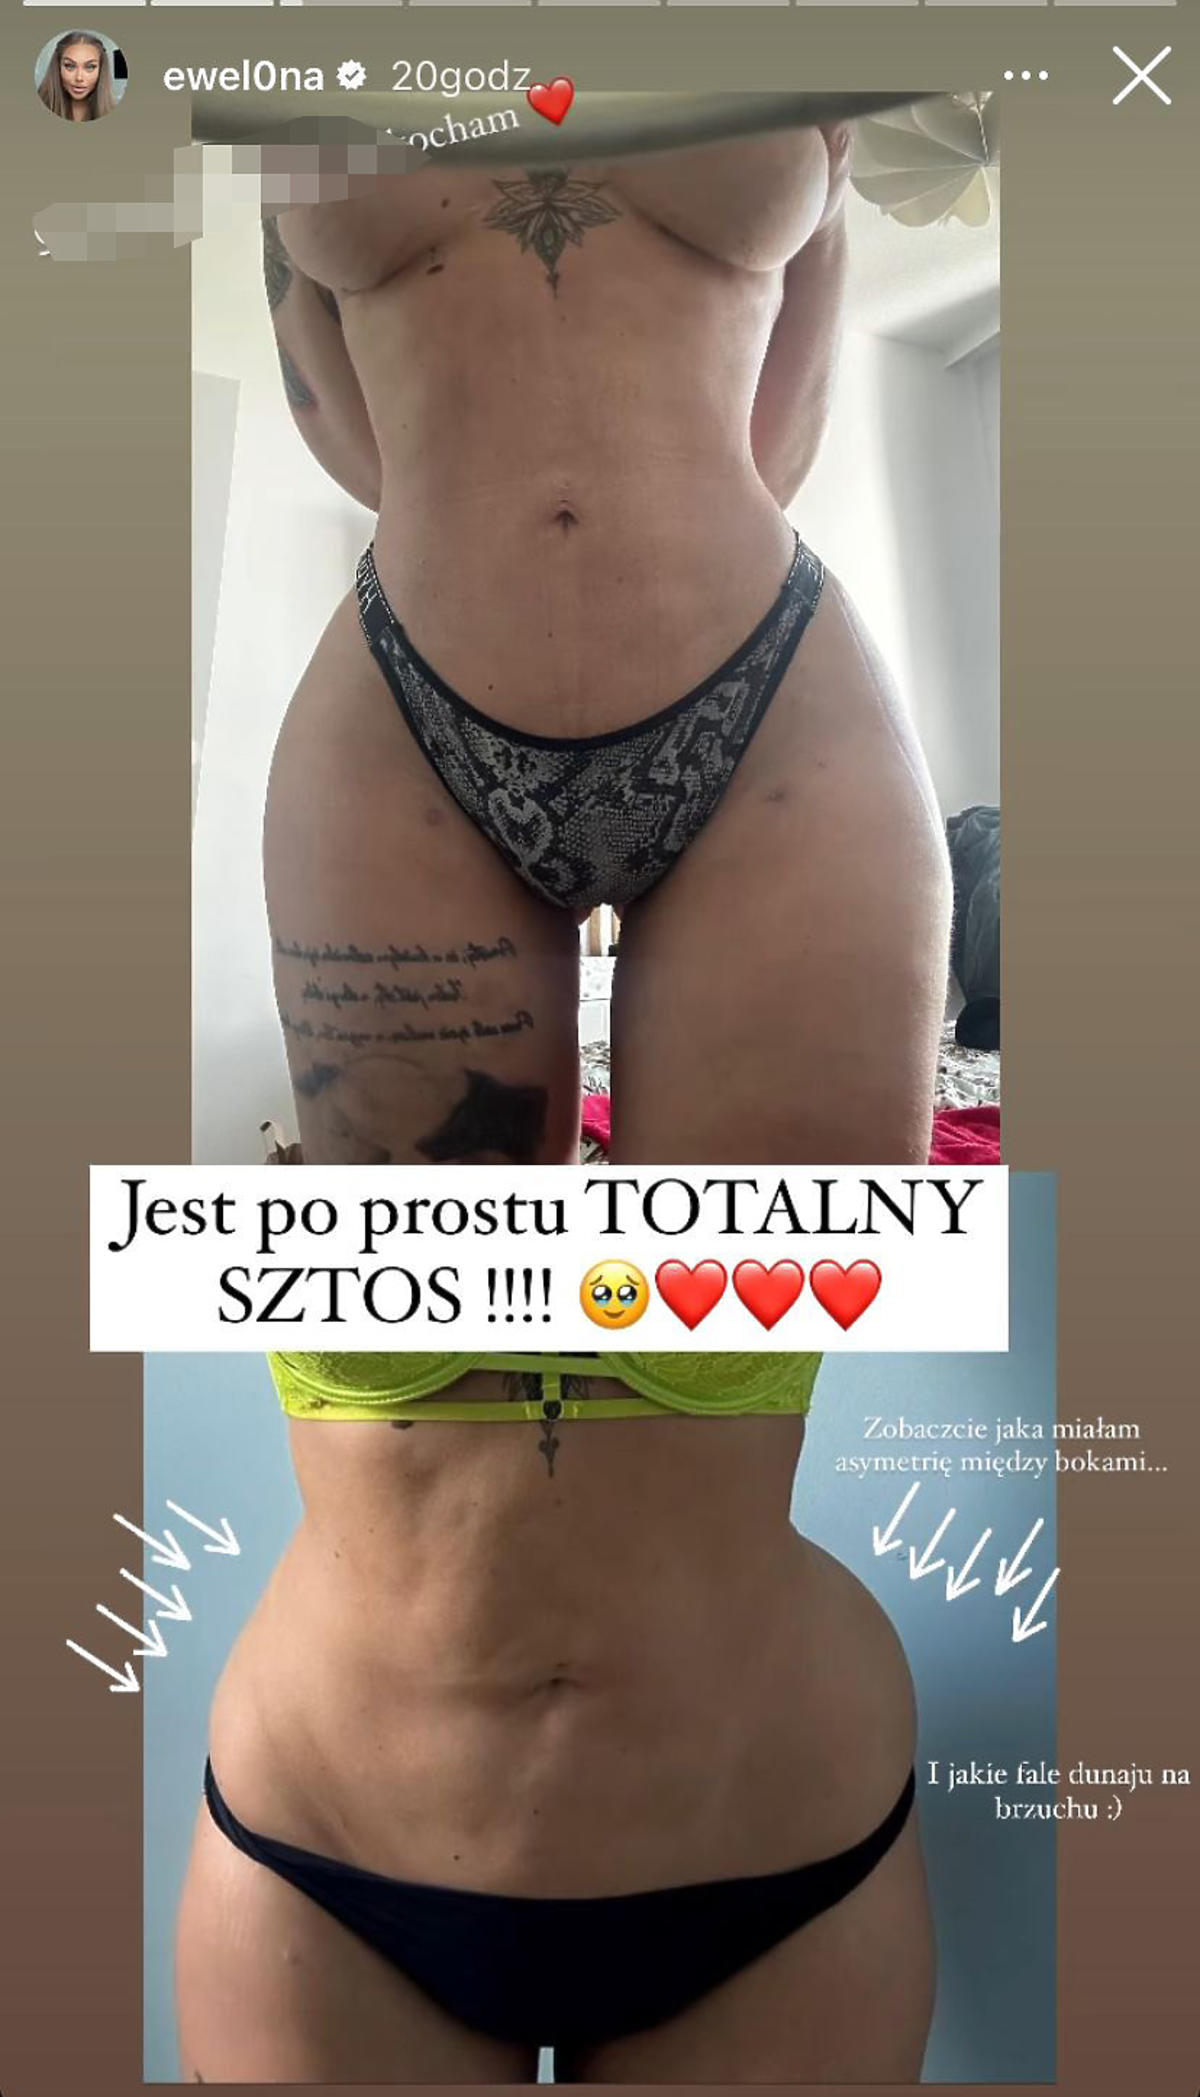 Ewel0na z Warsaw Shore pokazała brzuch po liposukcji 